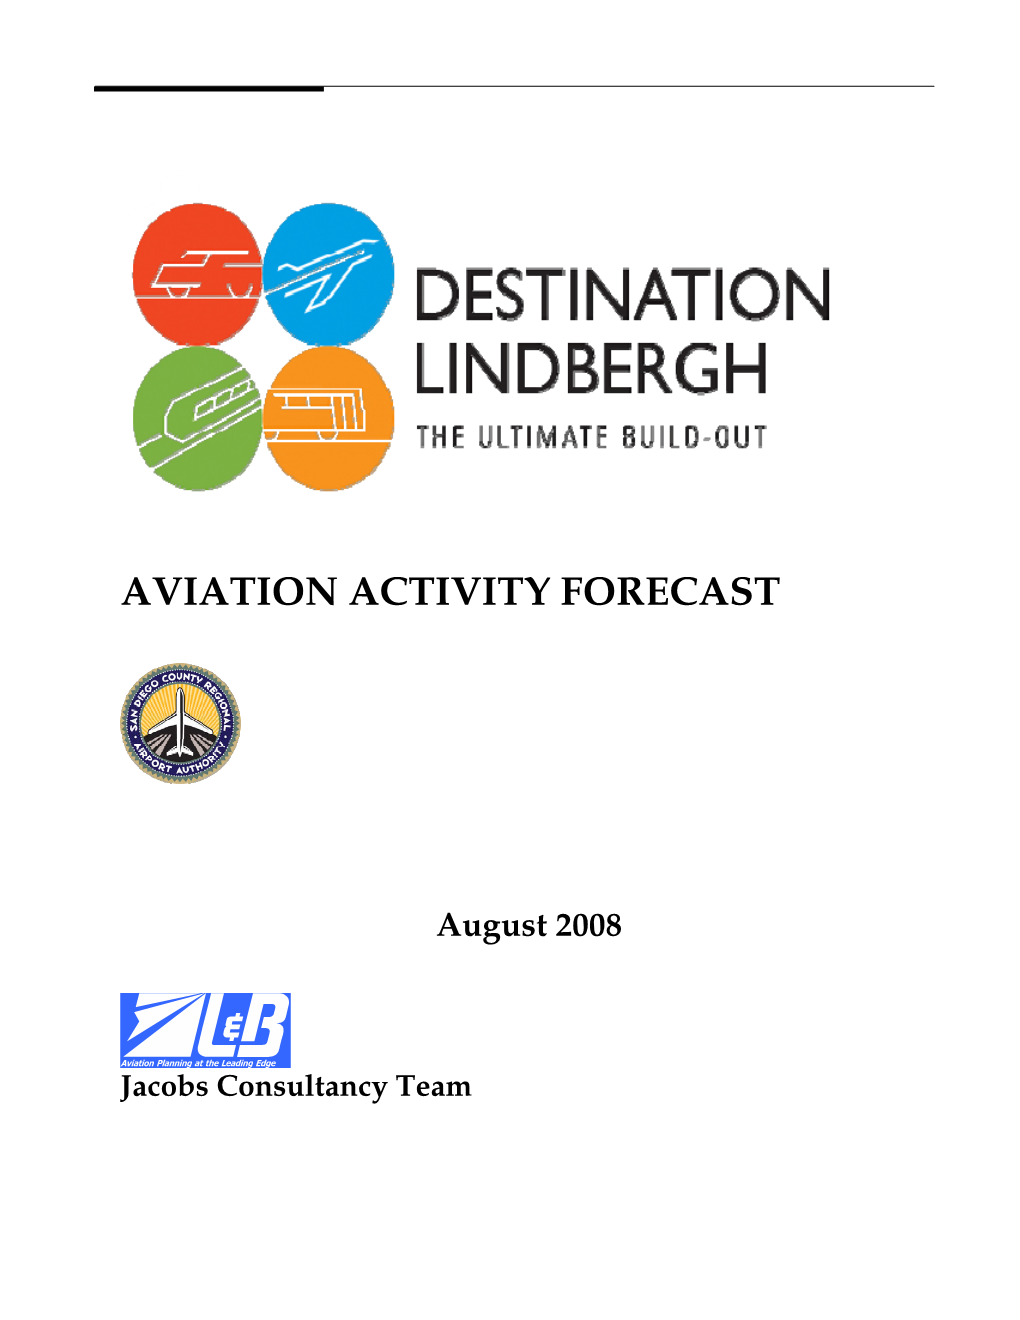 Aviation Activity Forecast